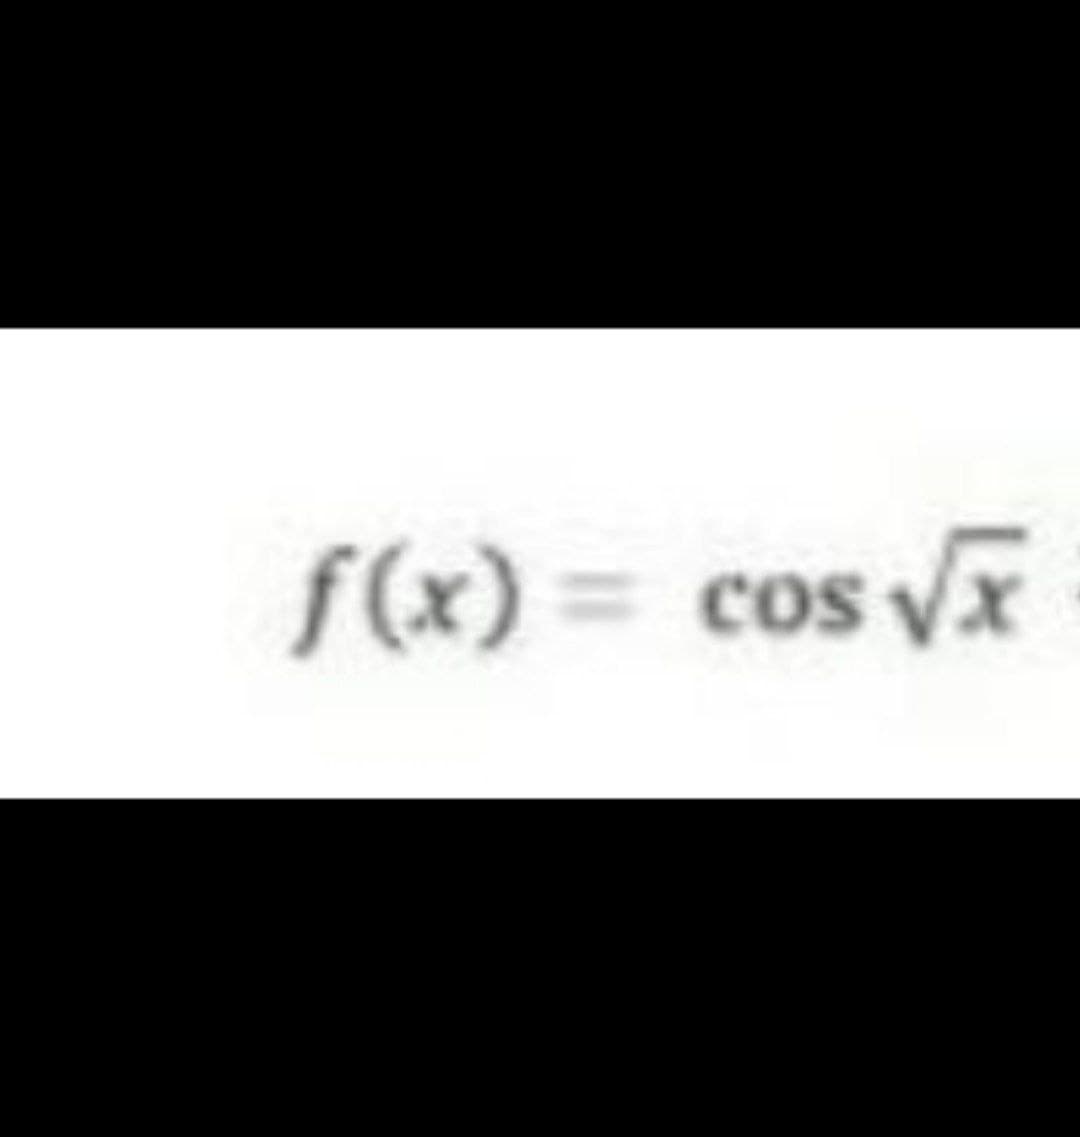 f(x) = cos x
